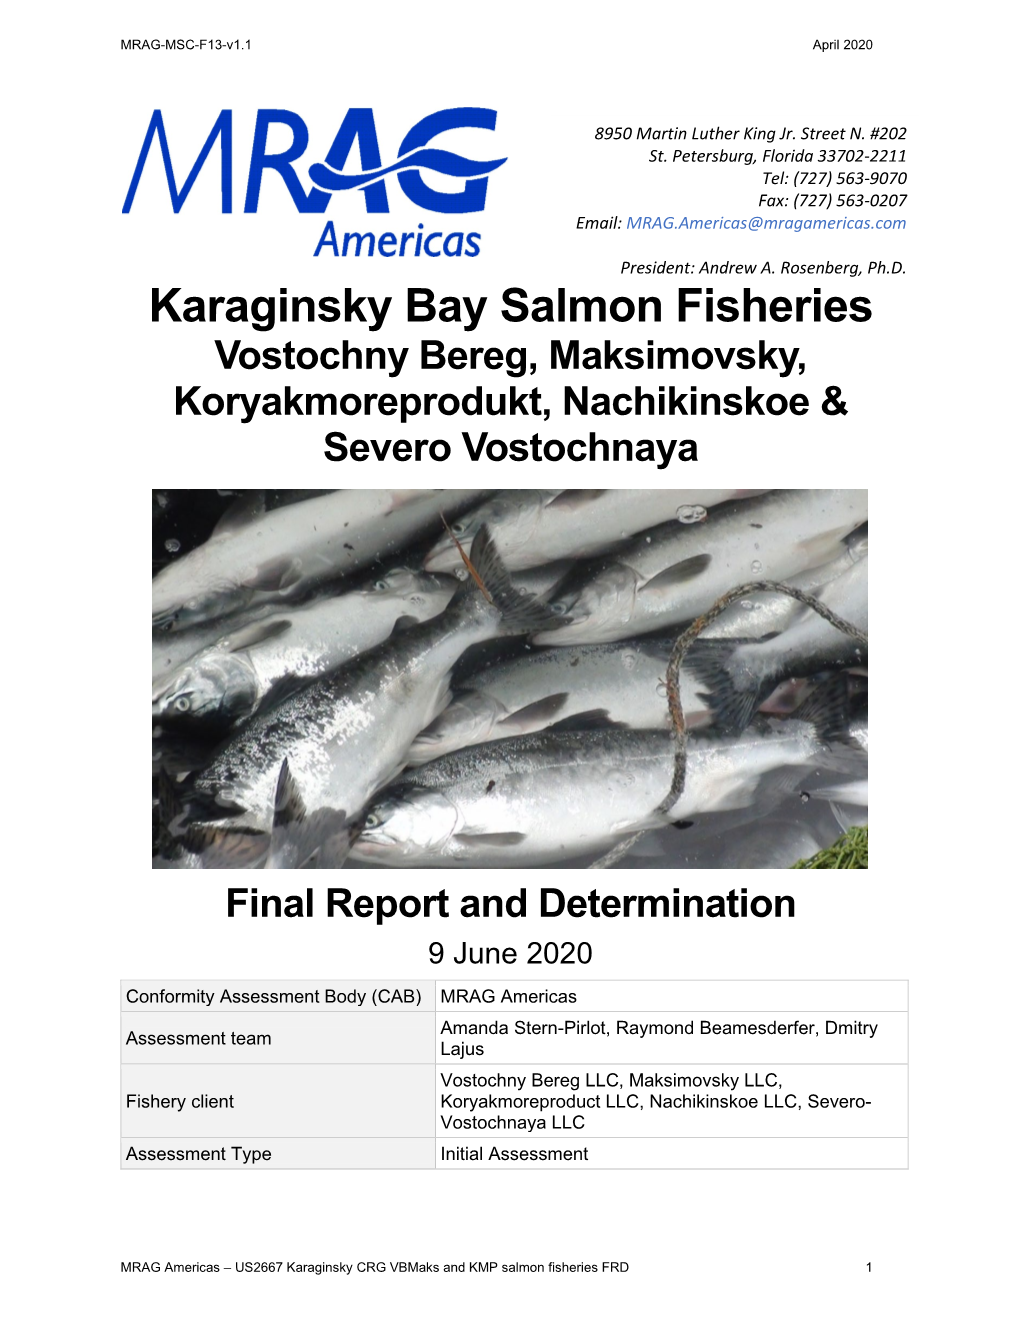 Karaginsky Bay Salmon Fisheries Vostochny Bereg, Maksimovsky, Koryakmoreprodukt, Nachikinskoe & Severo Vostochnaya